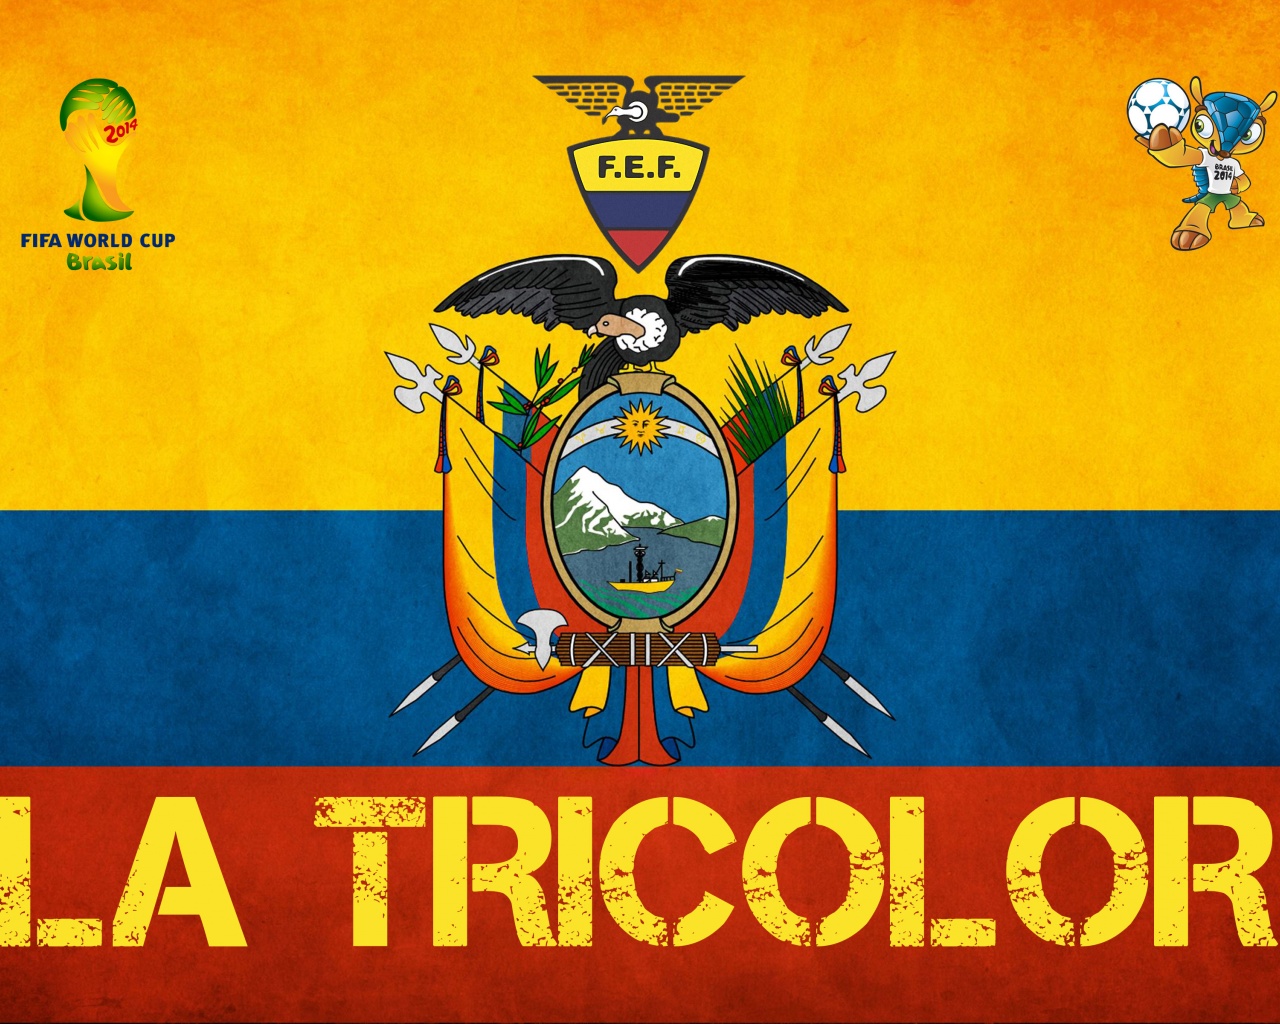 La Tricolor Ecuador Football Crest Logo